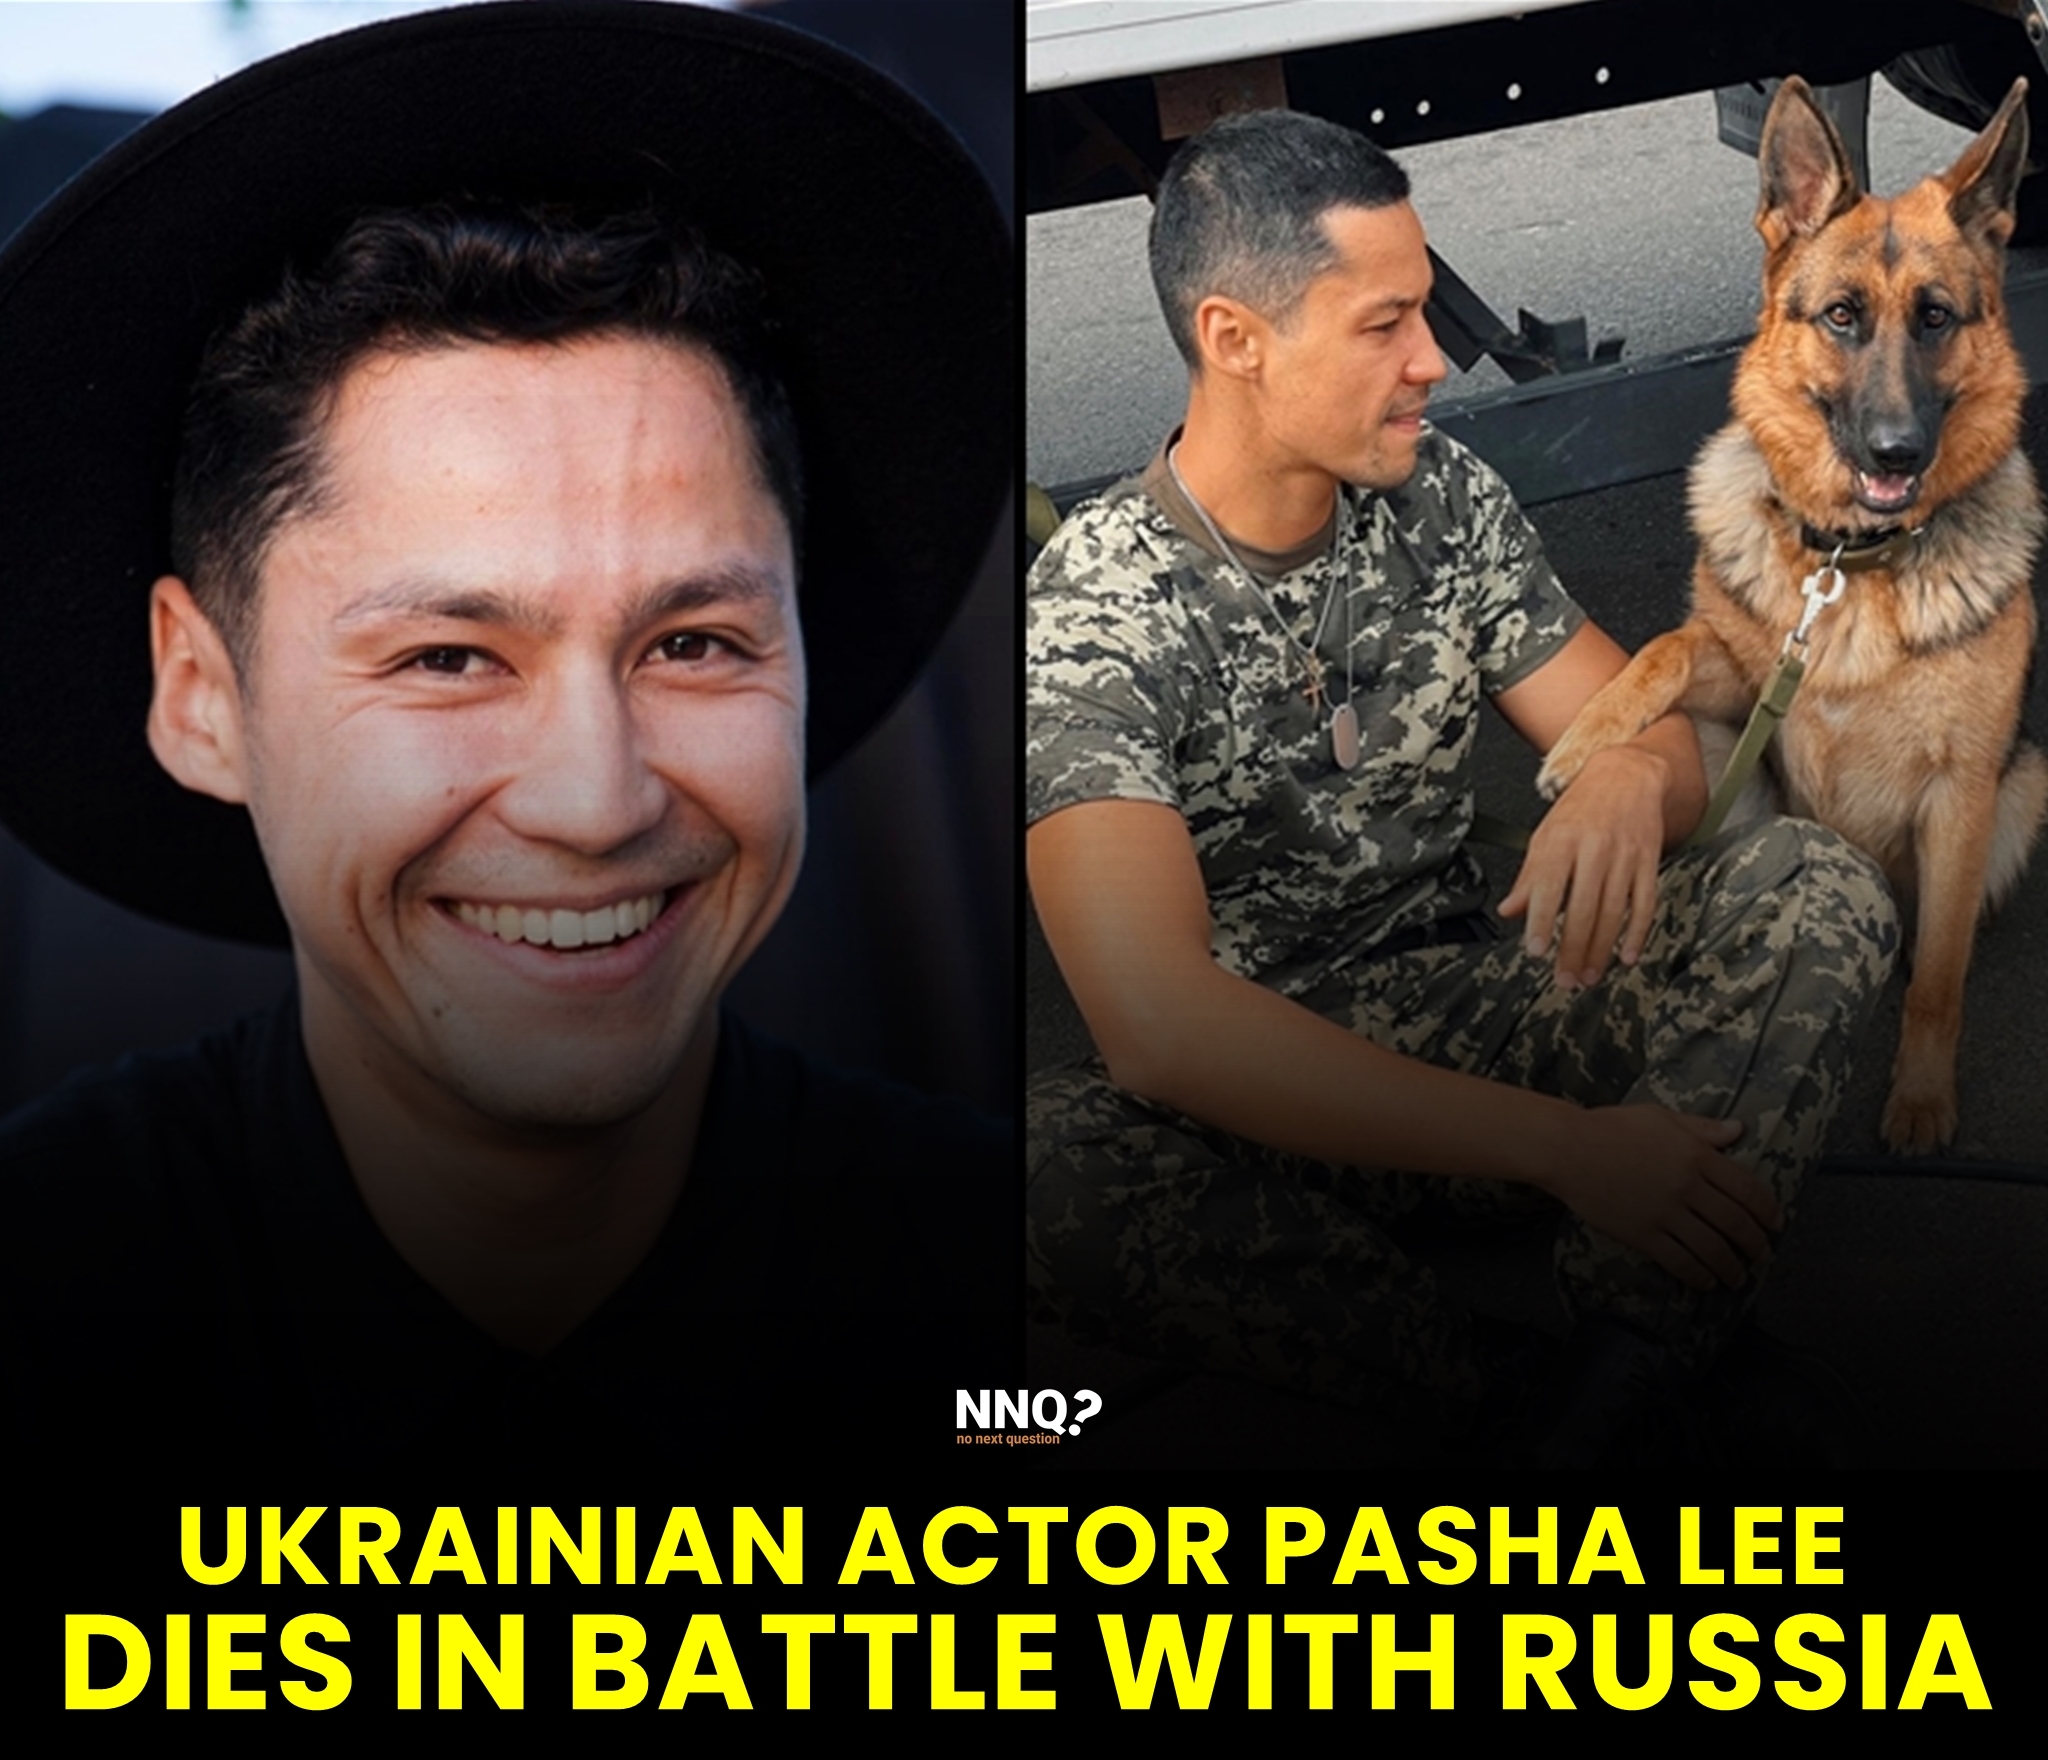 Ukrainian actor dies in battle with Russia